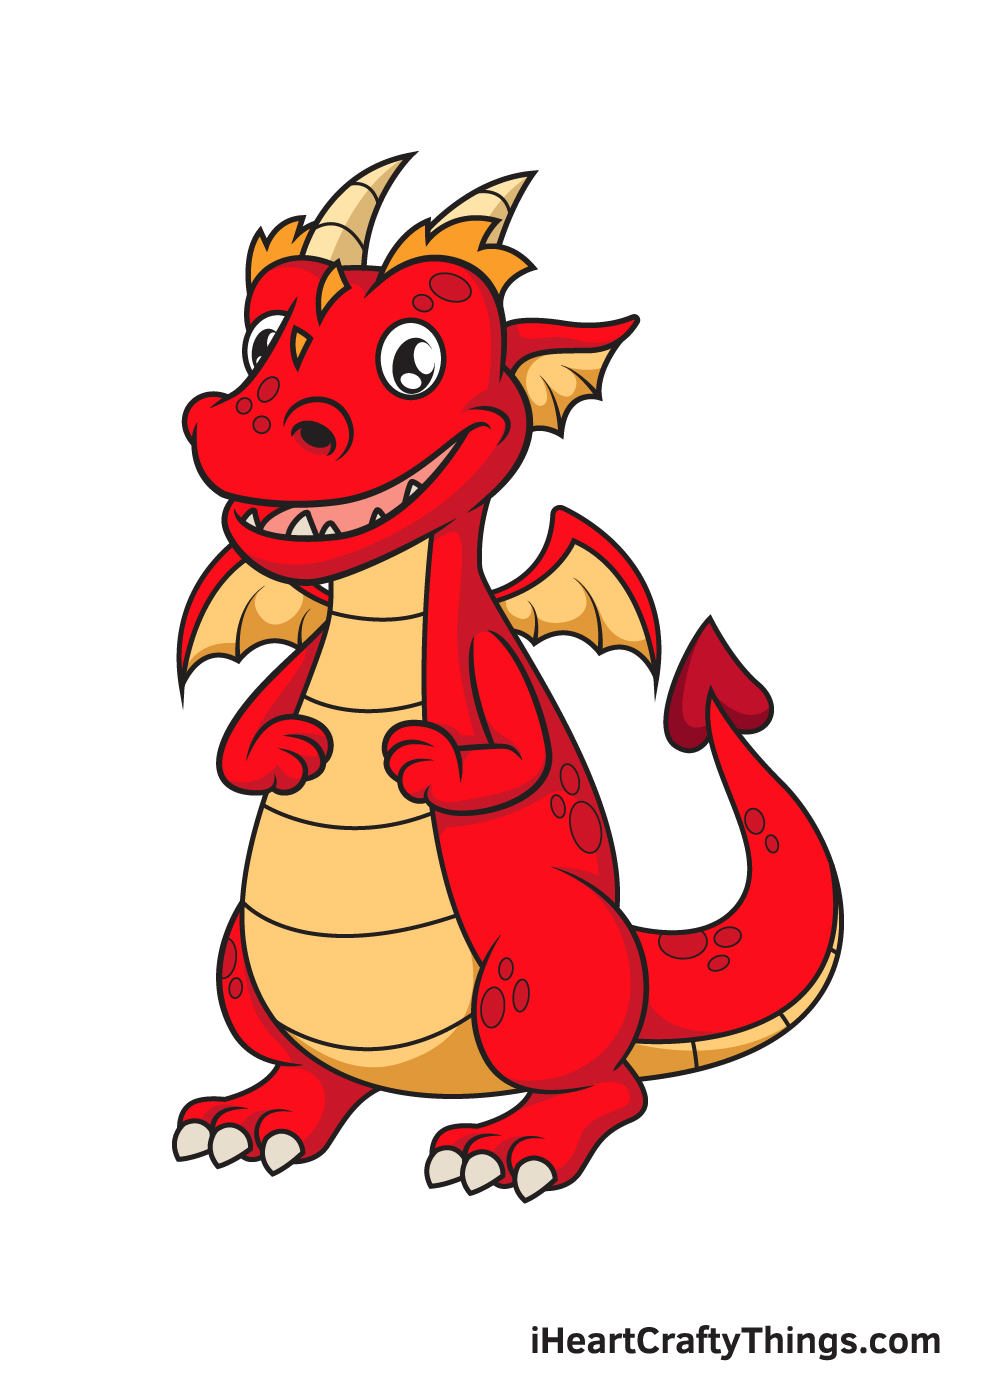 Dragon DRAWING – STEP 10 - Hướng dẫn cách vẽ con rồng đơn giản với 9 bước cơ bản cho bé tô màu